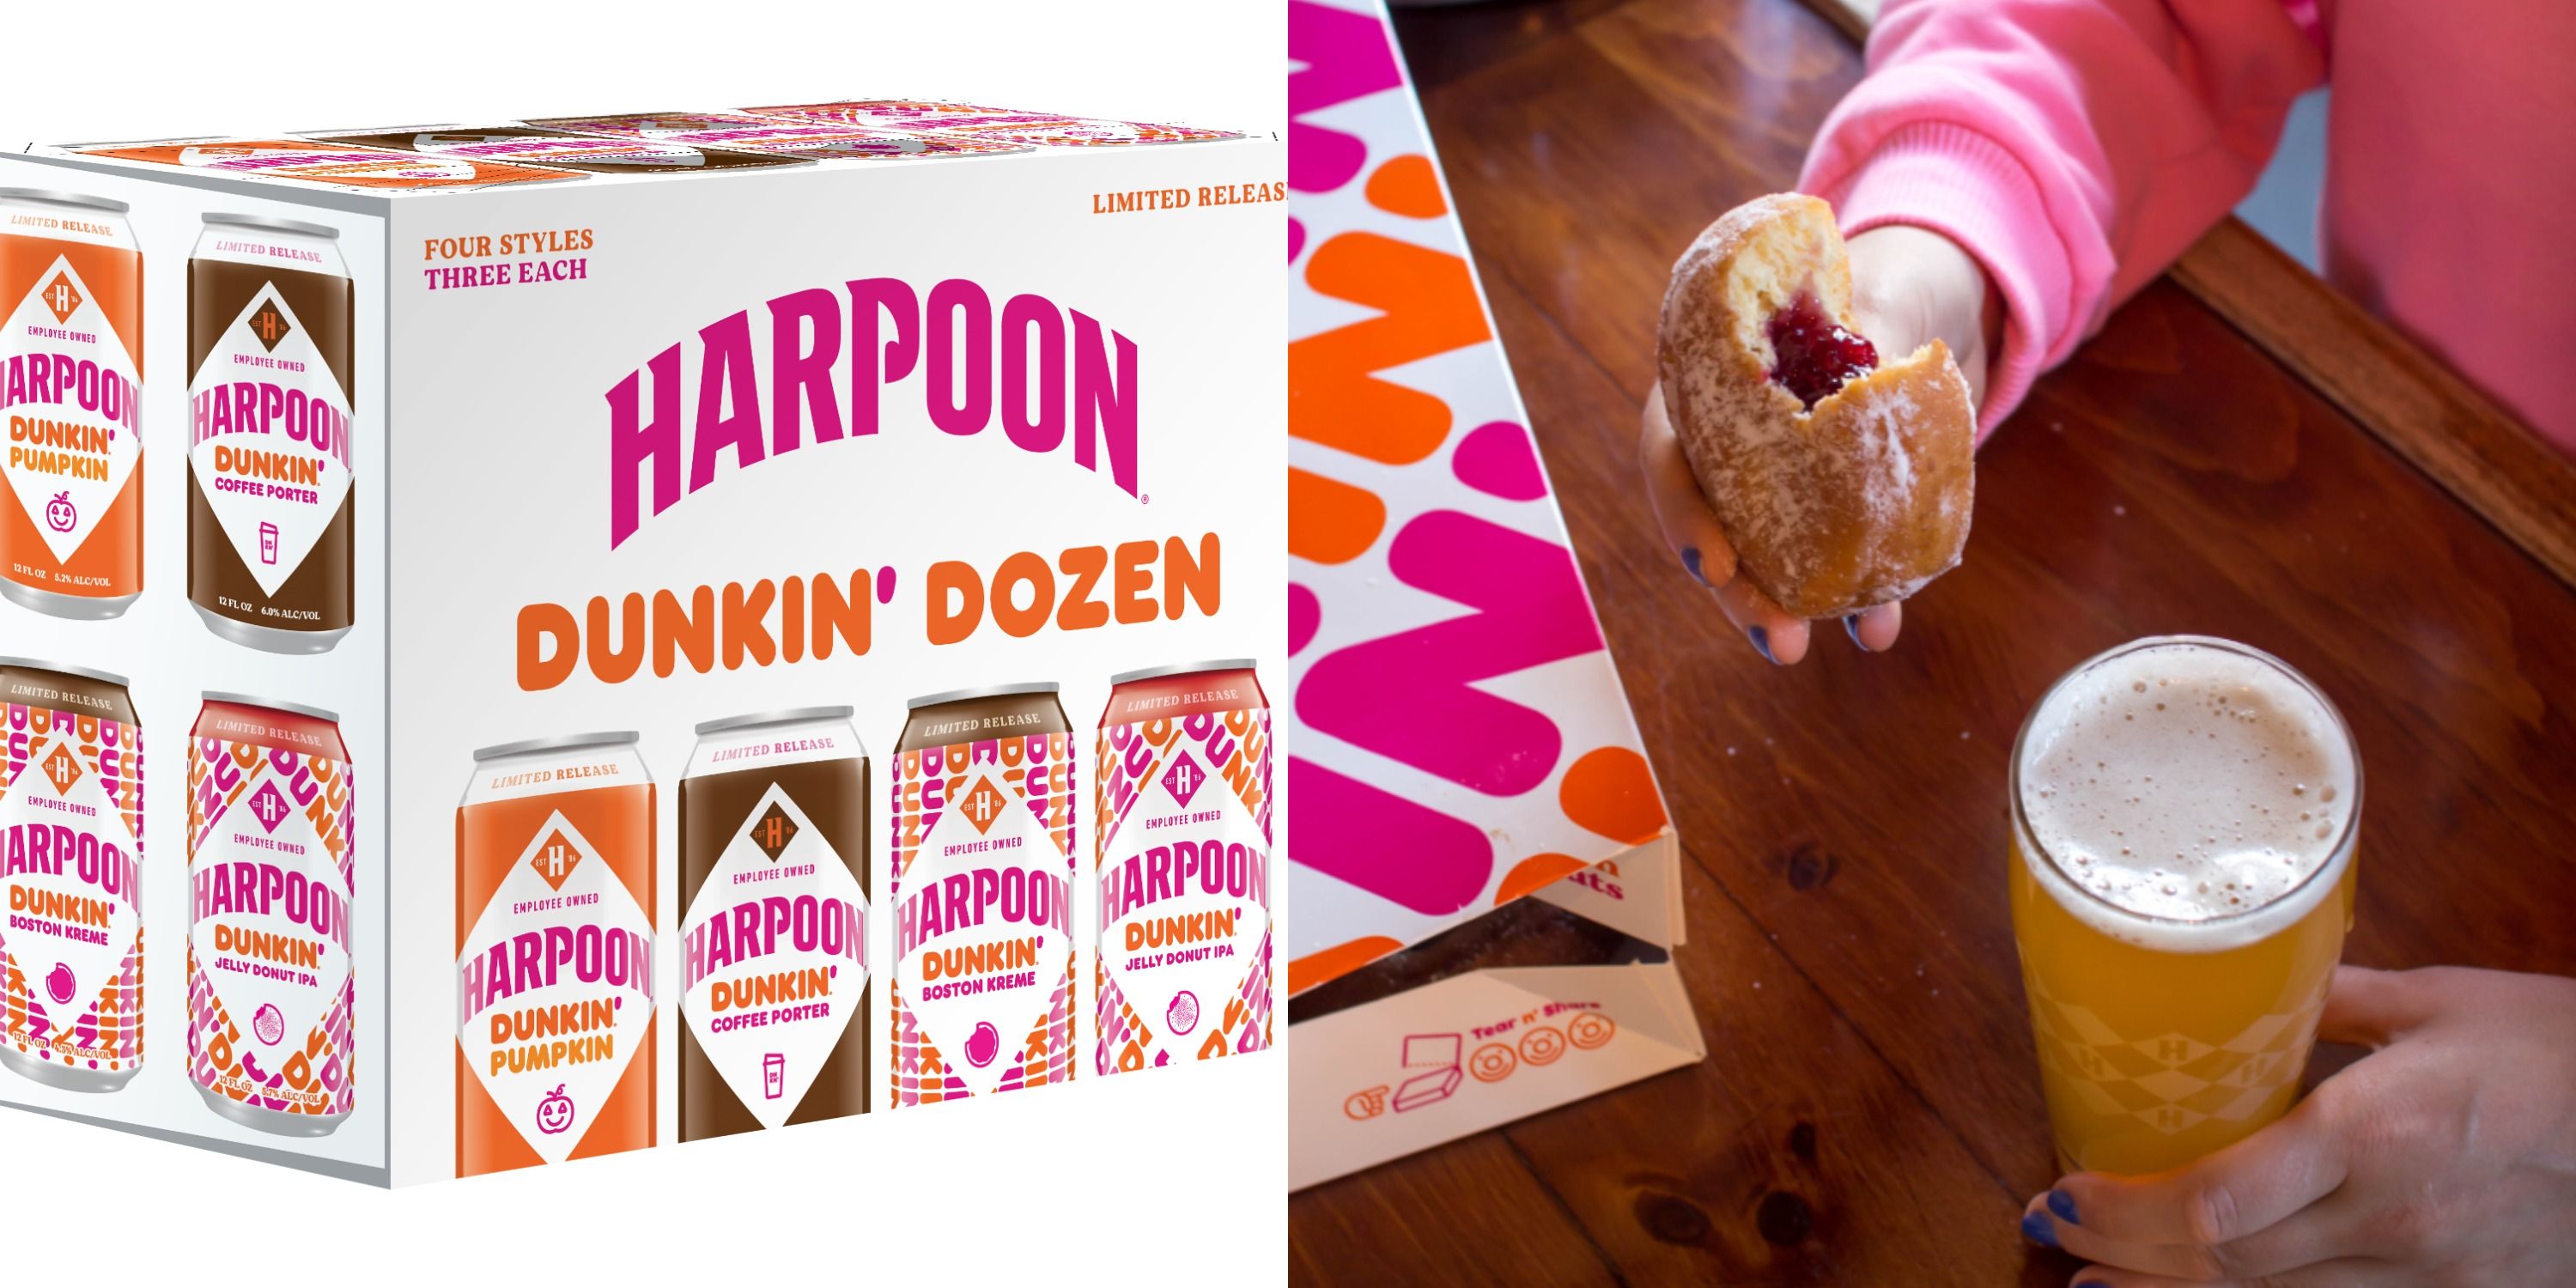 harpoon dunkin dozen mix pack stores